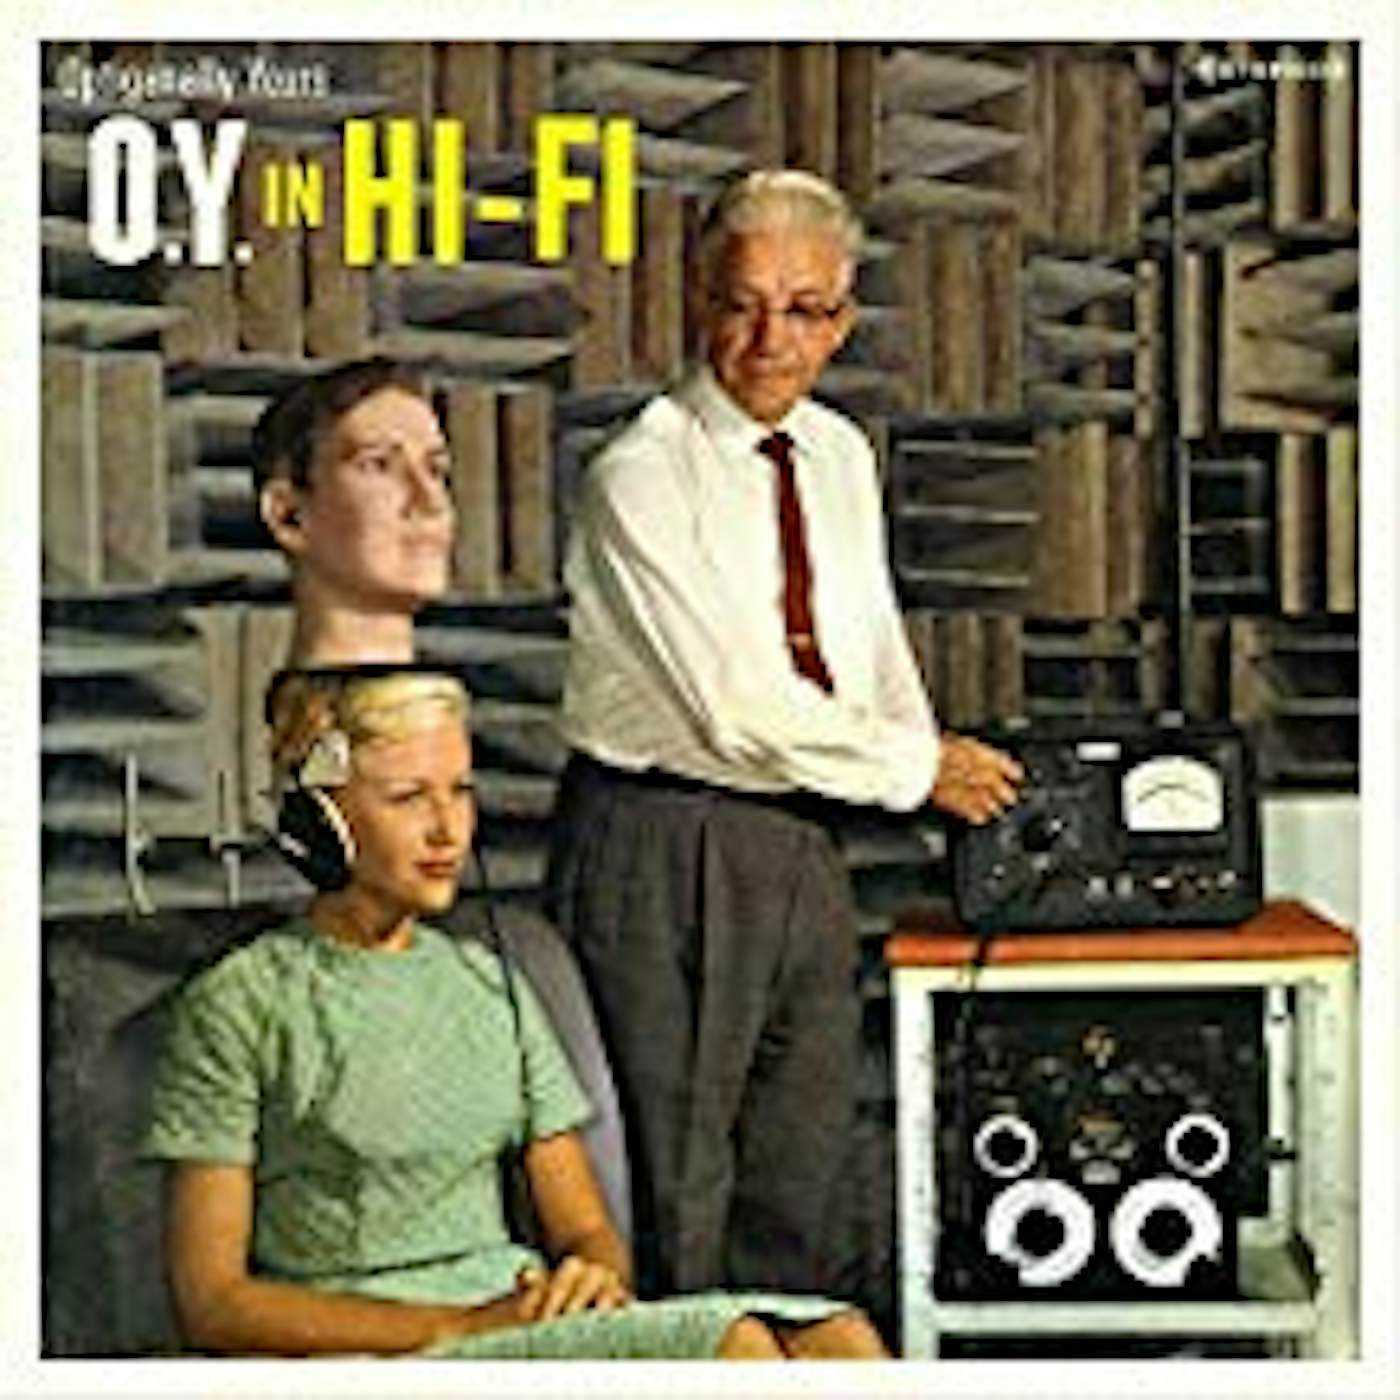 Optiganally Yours O.Y. IN HI-FI Vinyl Record